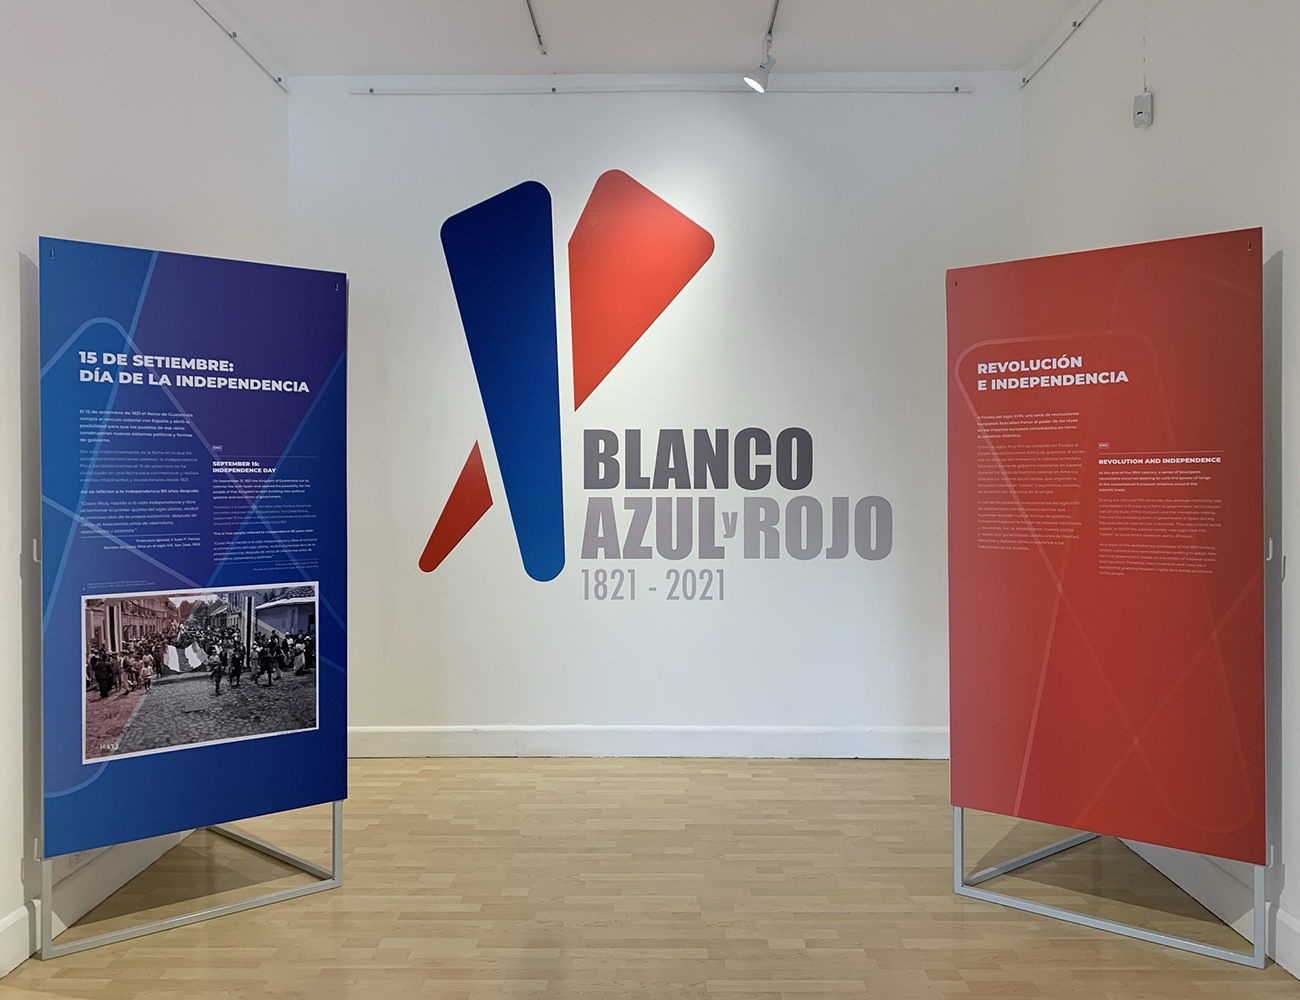 Blanco, azul y rojo. 1821-2021 es la exposición que le cuenta la historia del bicentenario de Costa Rica.